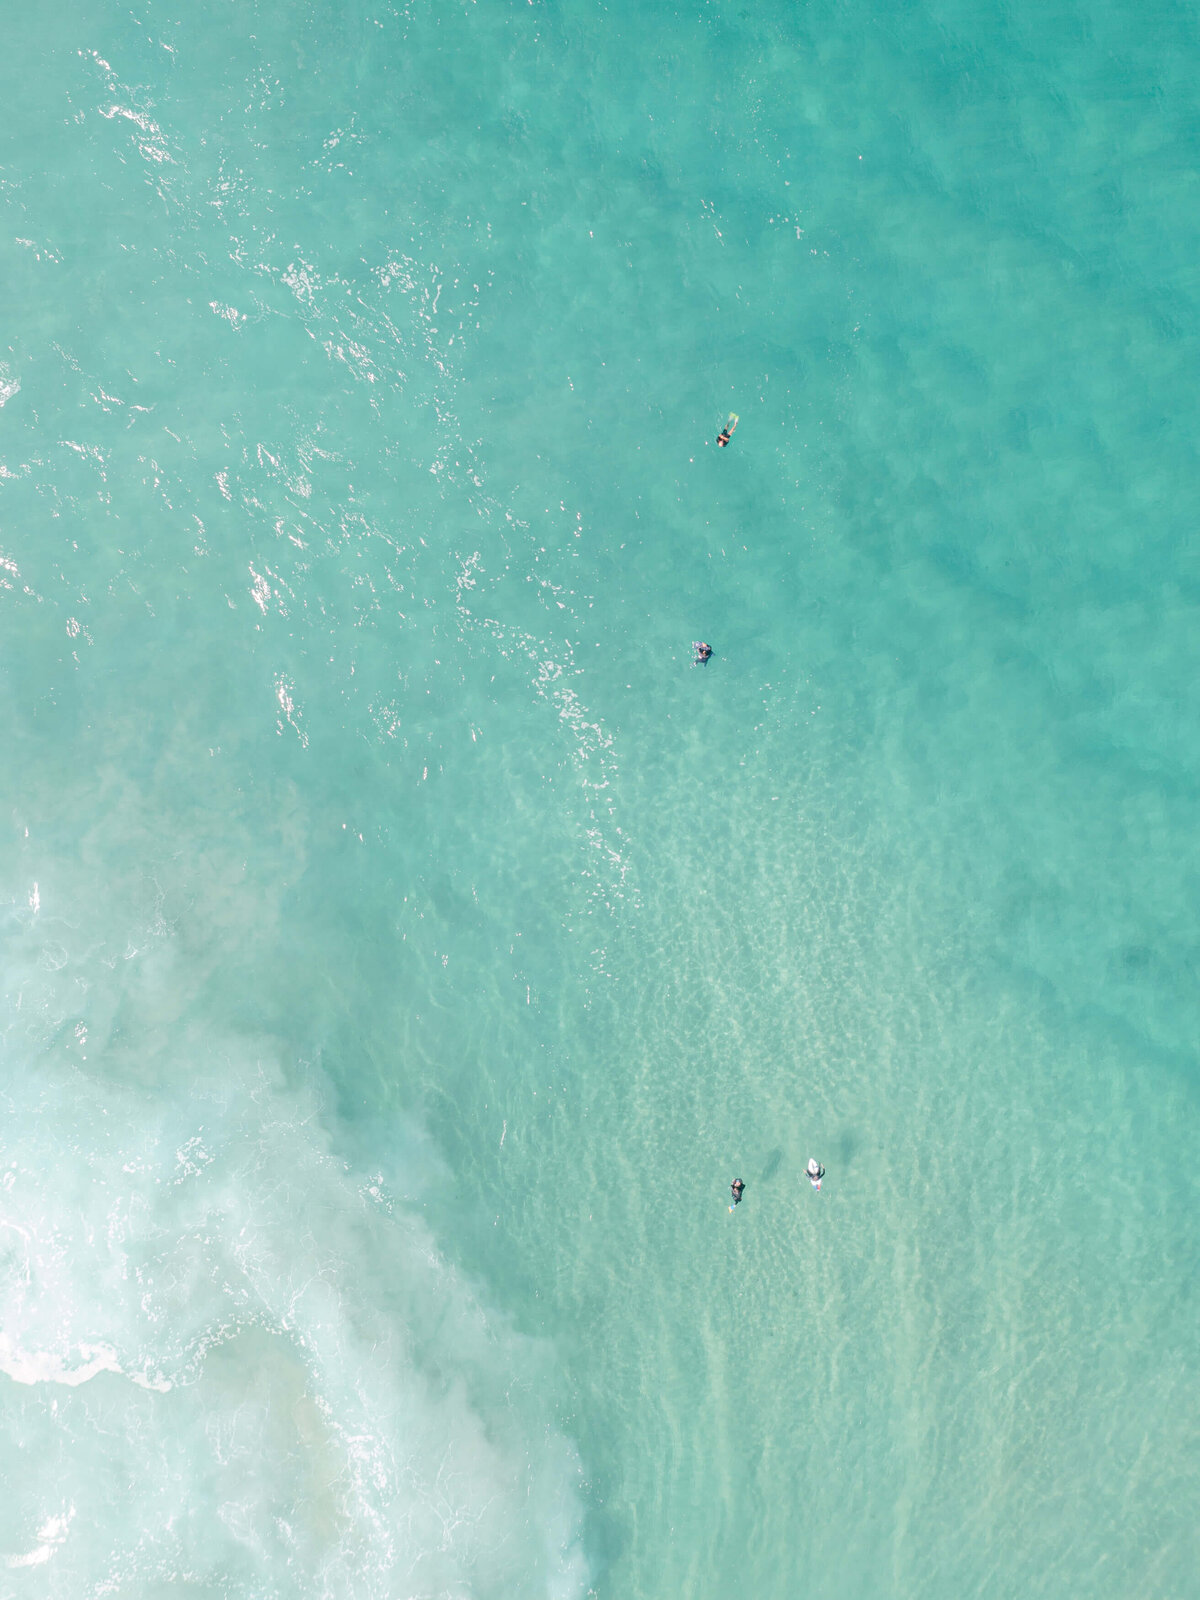 38-Australia Surfers Drone